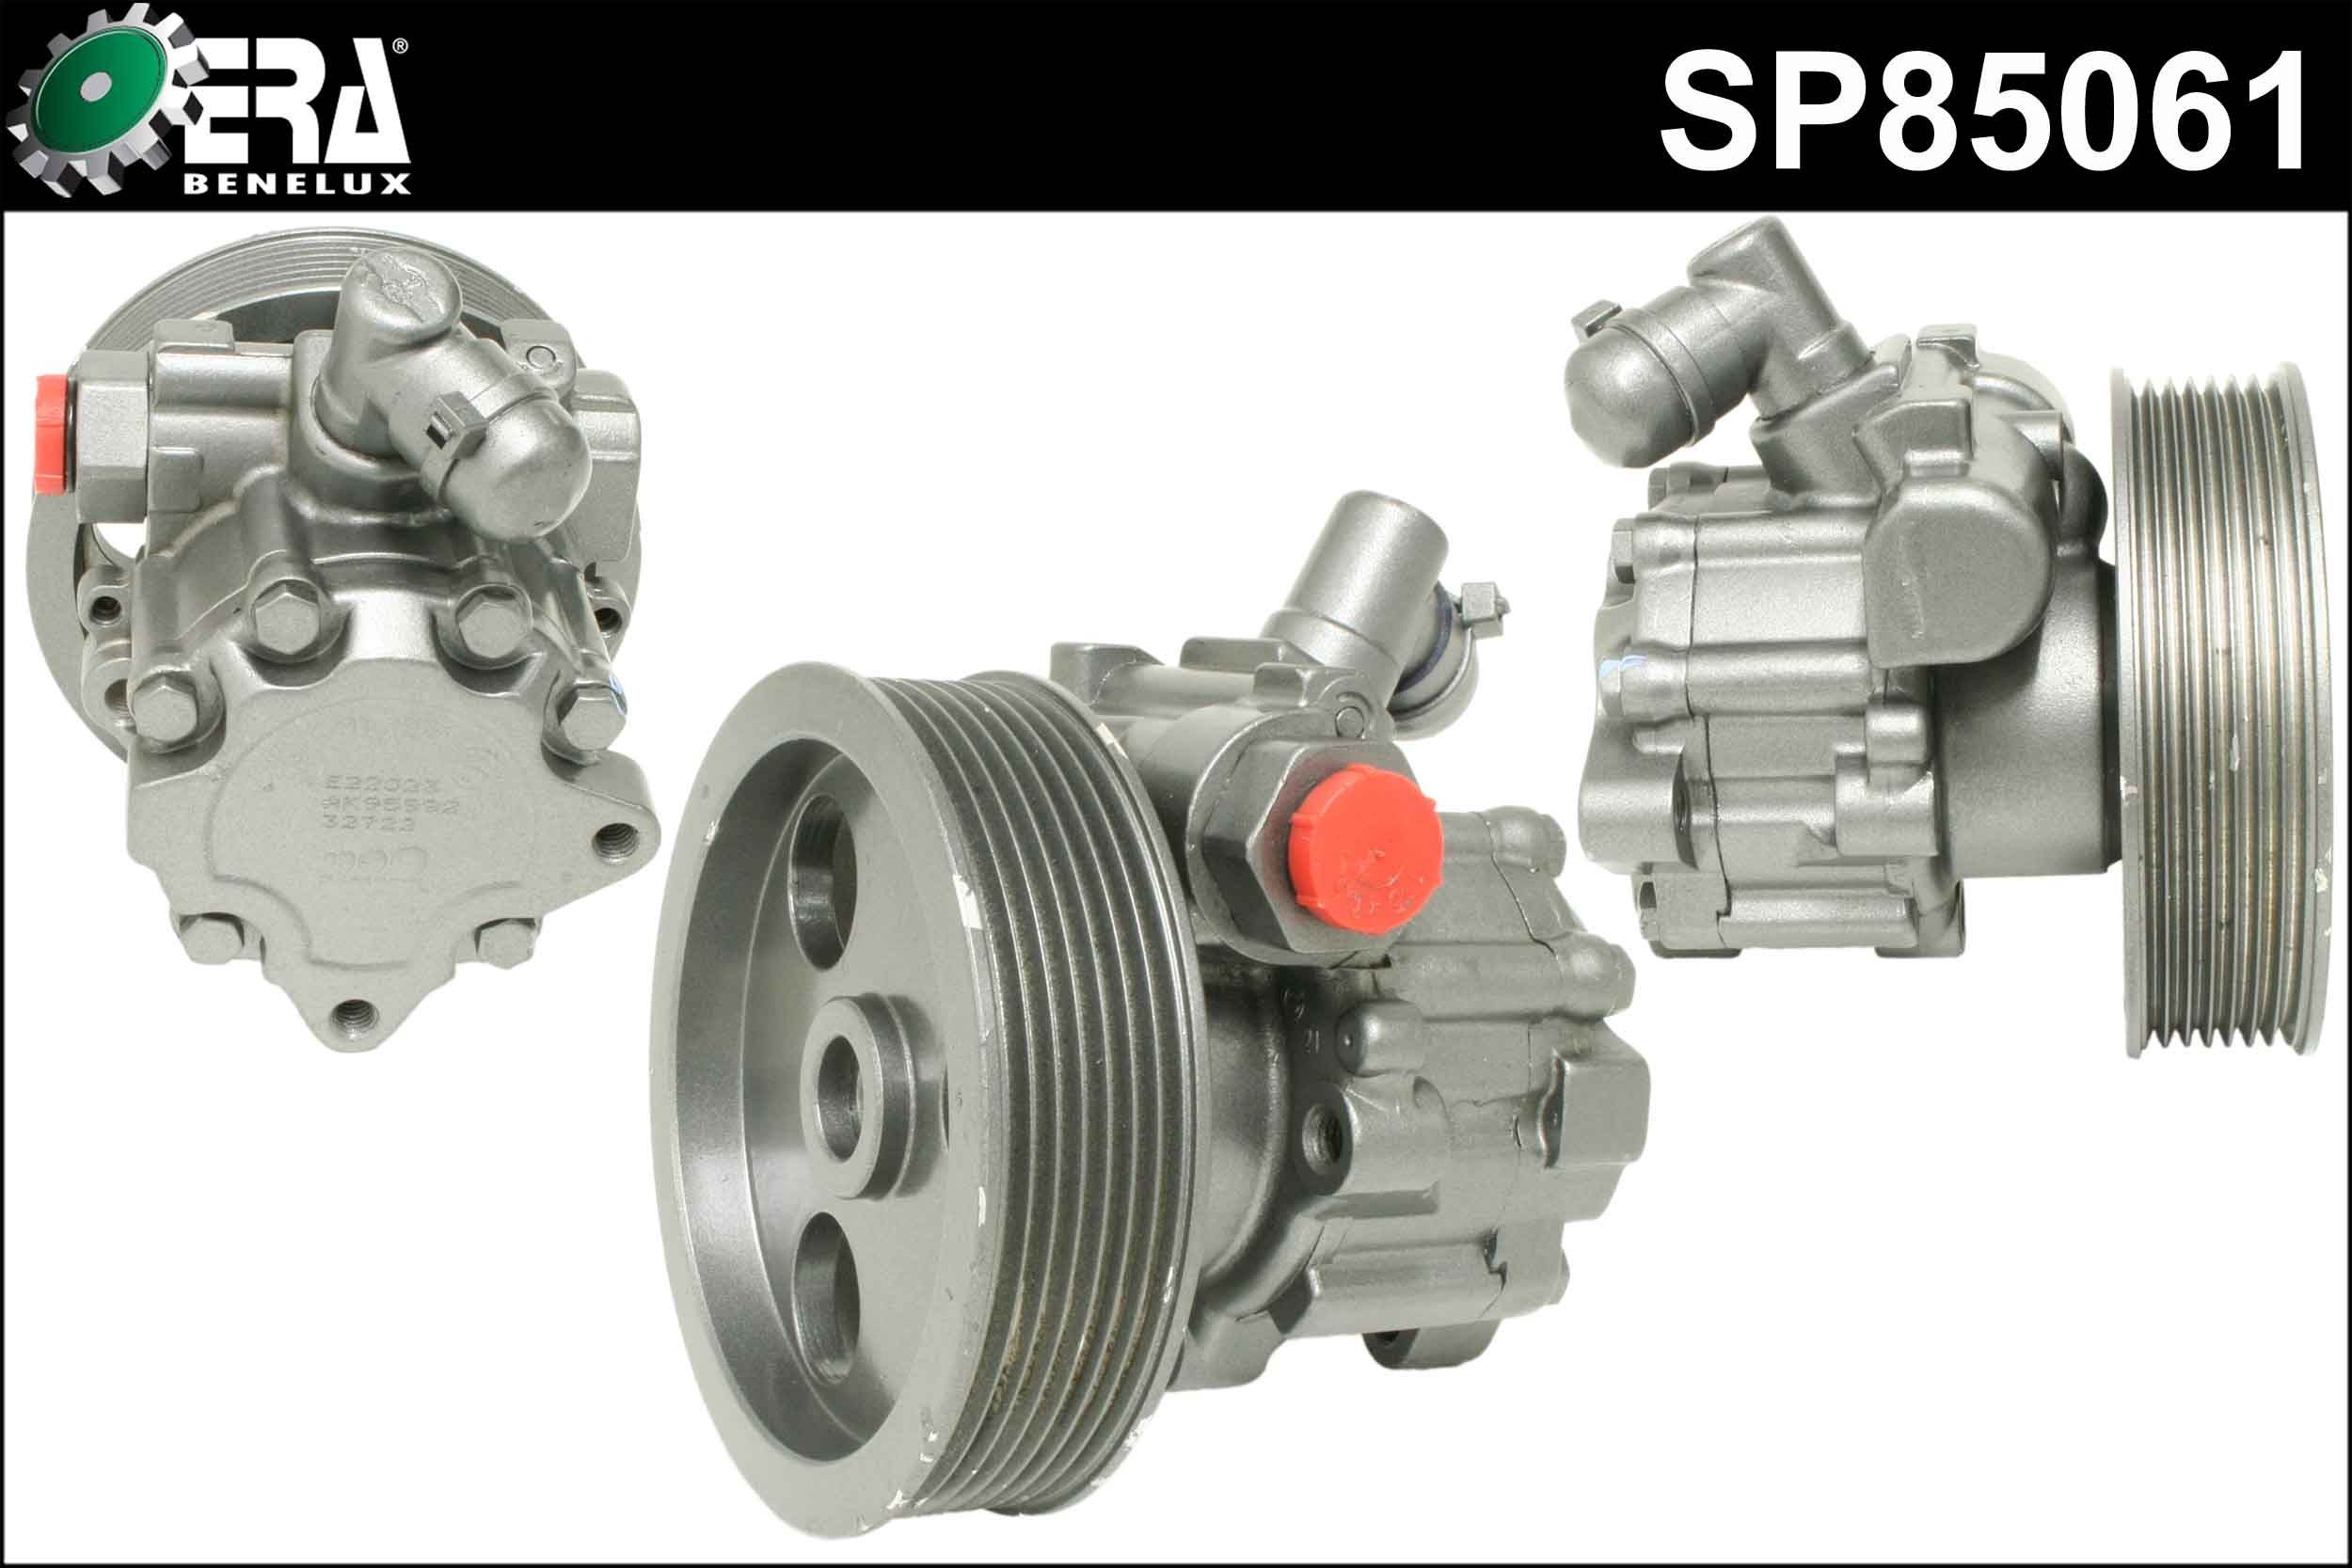 ERA Benelux SP85061 Power steering pump 0034667701